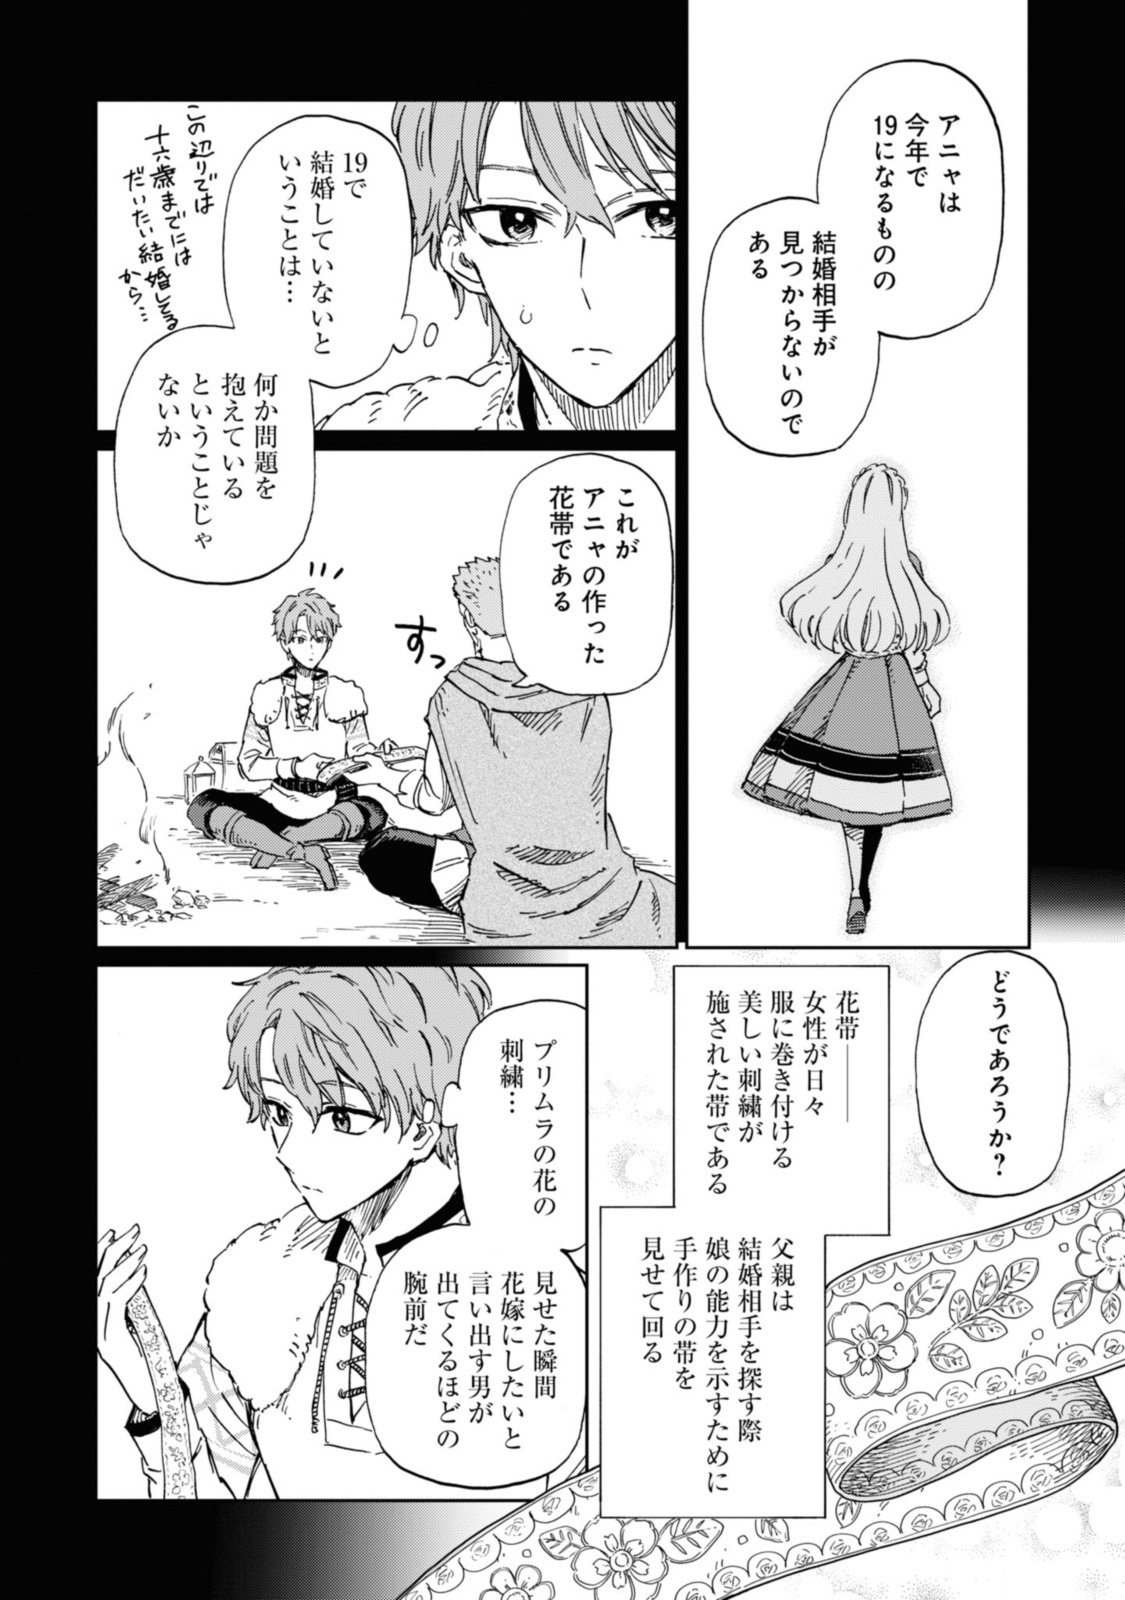 Youhou-ka to Mitsu Kusushi no Hanayome - Chapter 2.2 - Page 4